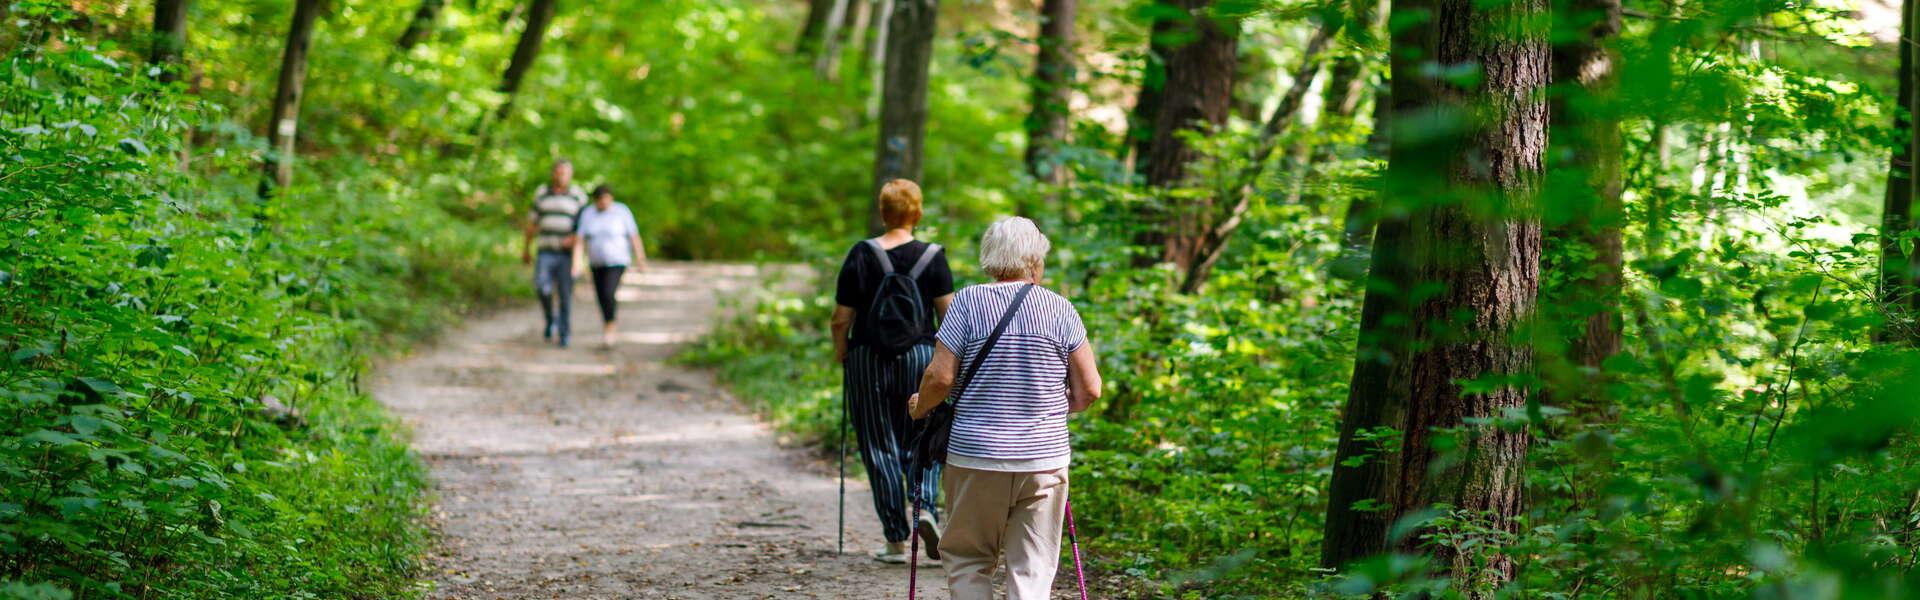 Widok na grupę starszych osób spacerujących po leśnej ścieżce w rezerwacie Doliny Racławki. 2 kobiety na pierwszym planie w ręku trzymają kilki. Wokół las.